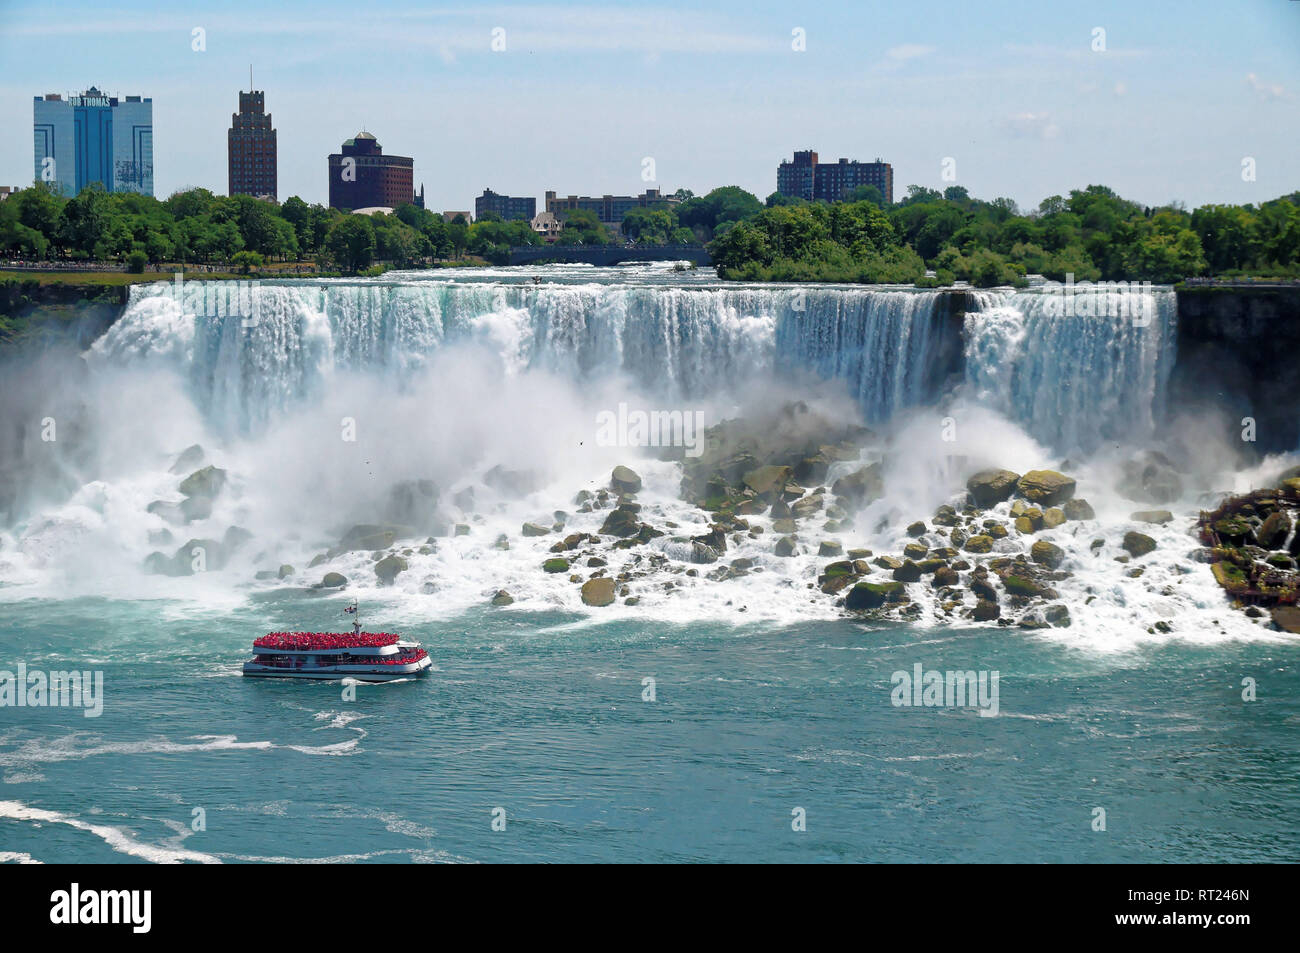 Vista de la cascada Niagara Falls americana con una embarcación turística Maid of the Mist en la parte delantera. Las caídas de altura es de 57 m y se lanzan hacia abajo alrededor de 6,400 m3 w Foto de stock